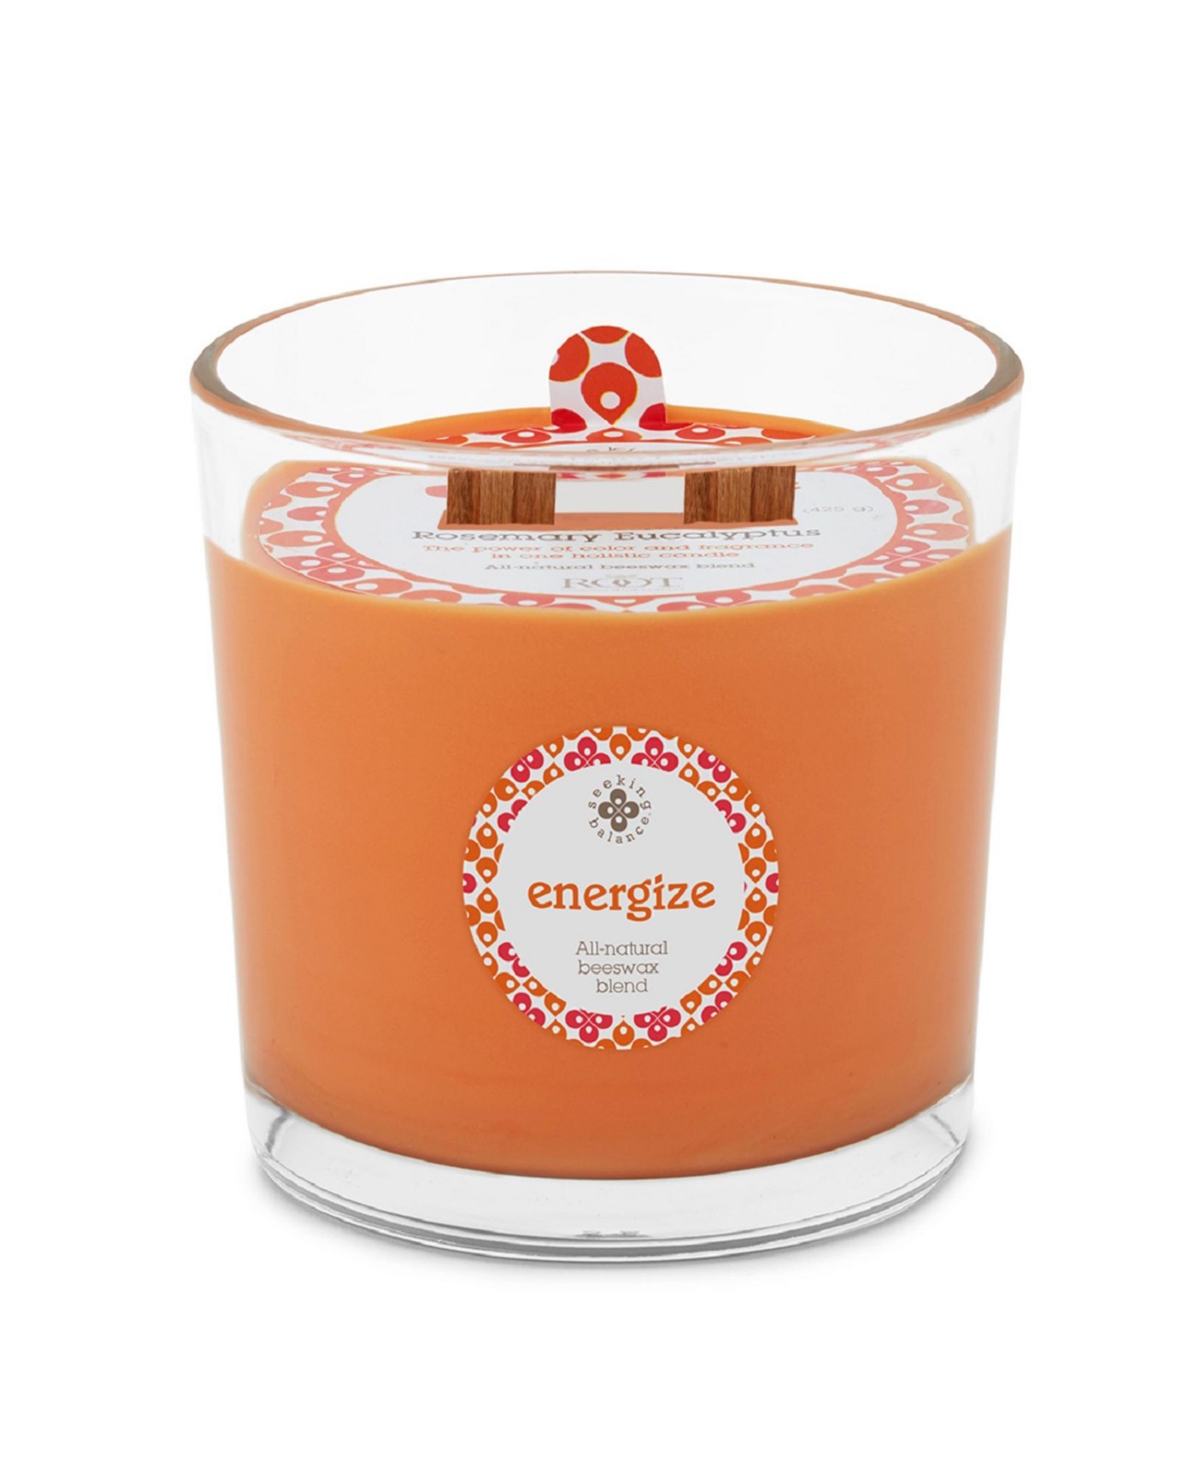 Seeking Balance 2 Wick Energize Rosemary Eucalyptus Spa Jar Candle, 12 oz - Orange